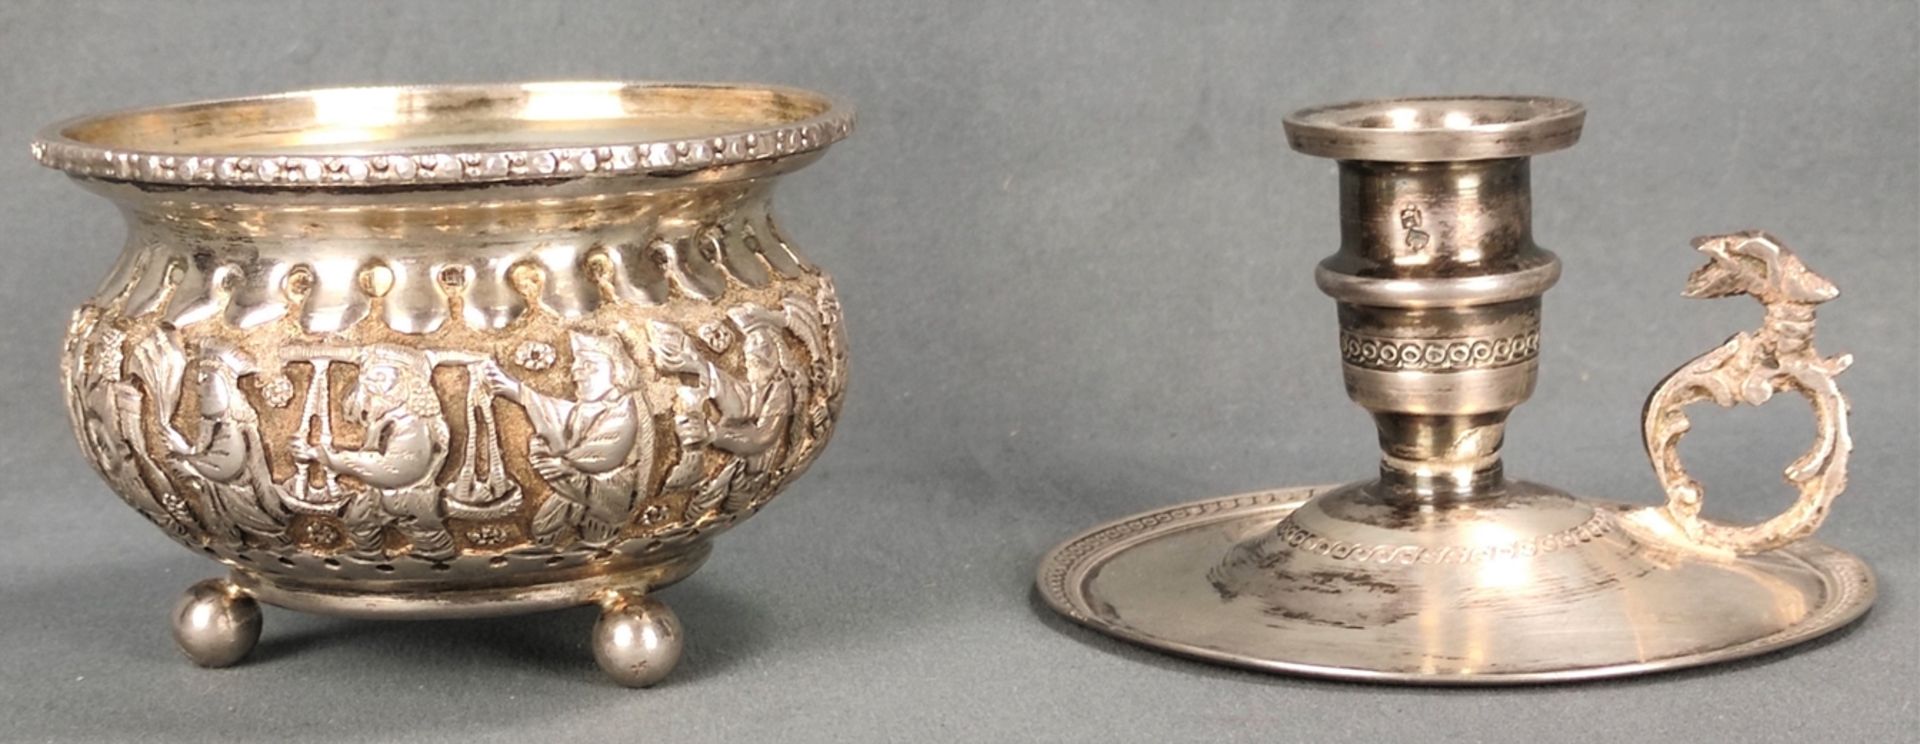 Zwei Silber-Objekte, bestehend aus einem Darmol Leuchter, Silber 800, Ägypten, 68g, Höhe 5,5 cm und